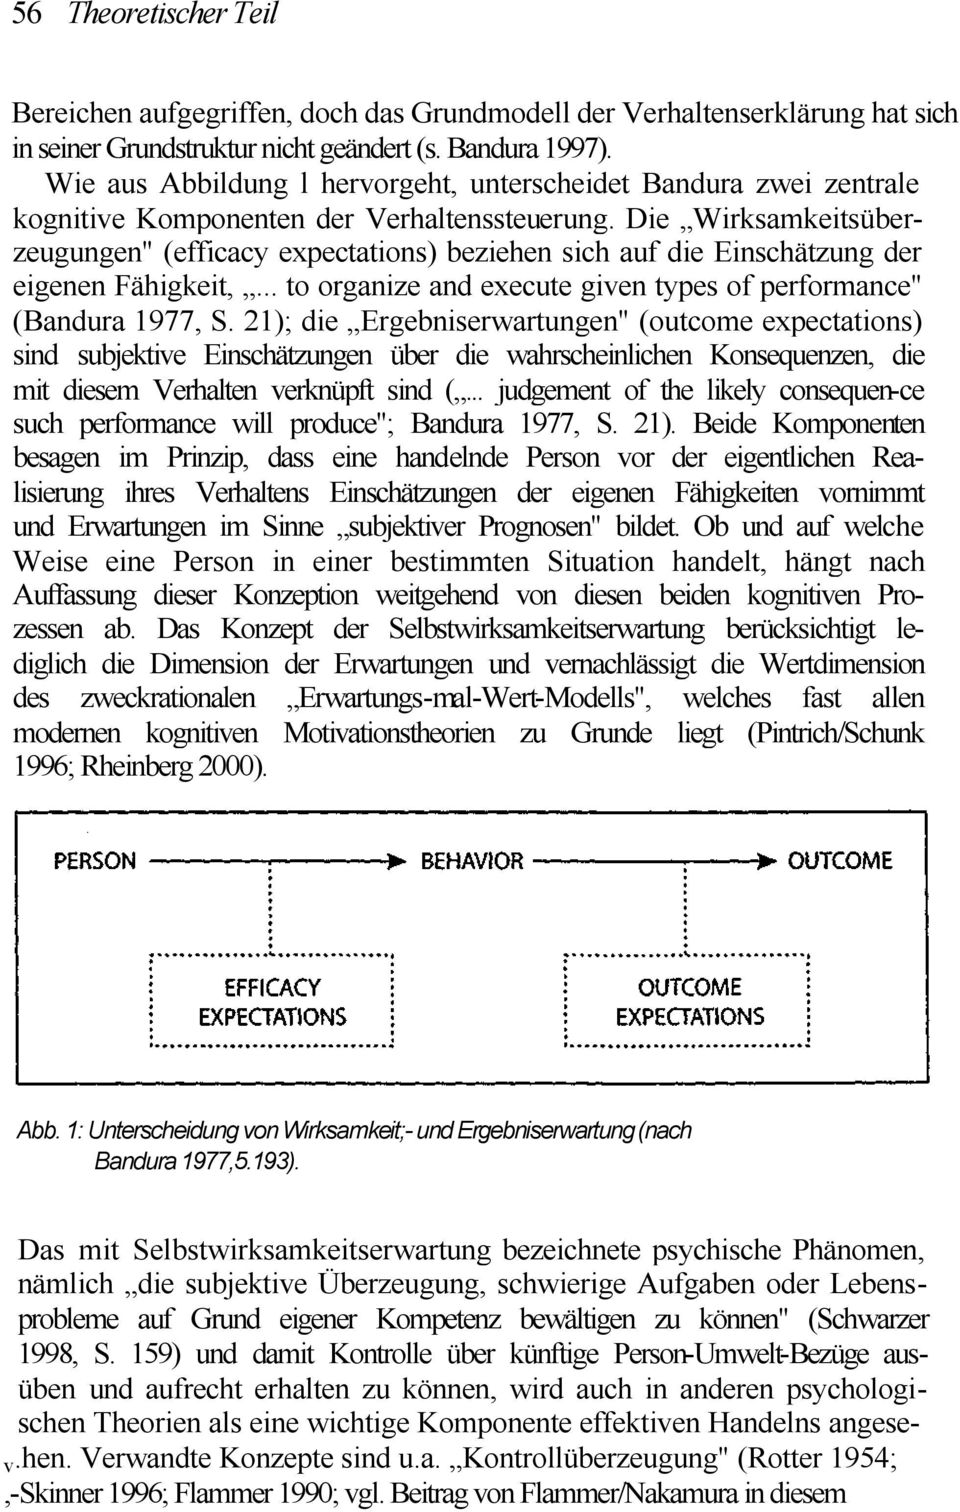 Die Wirksamkeitsüberzeugungen" (efficacy expectations) beziehen sich auf die Einschätzung der eigenen Fähigkeit,... to organize and execute given types of performance" (Bandura 1977, S.